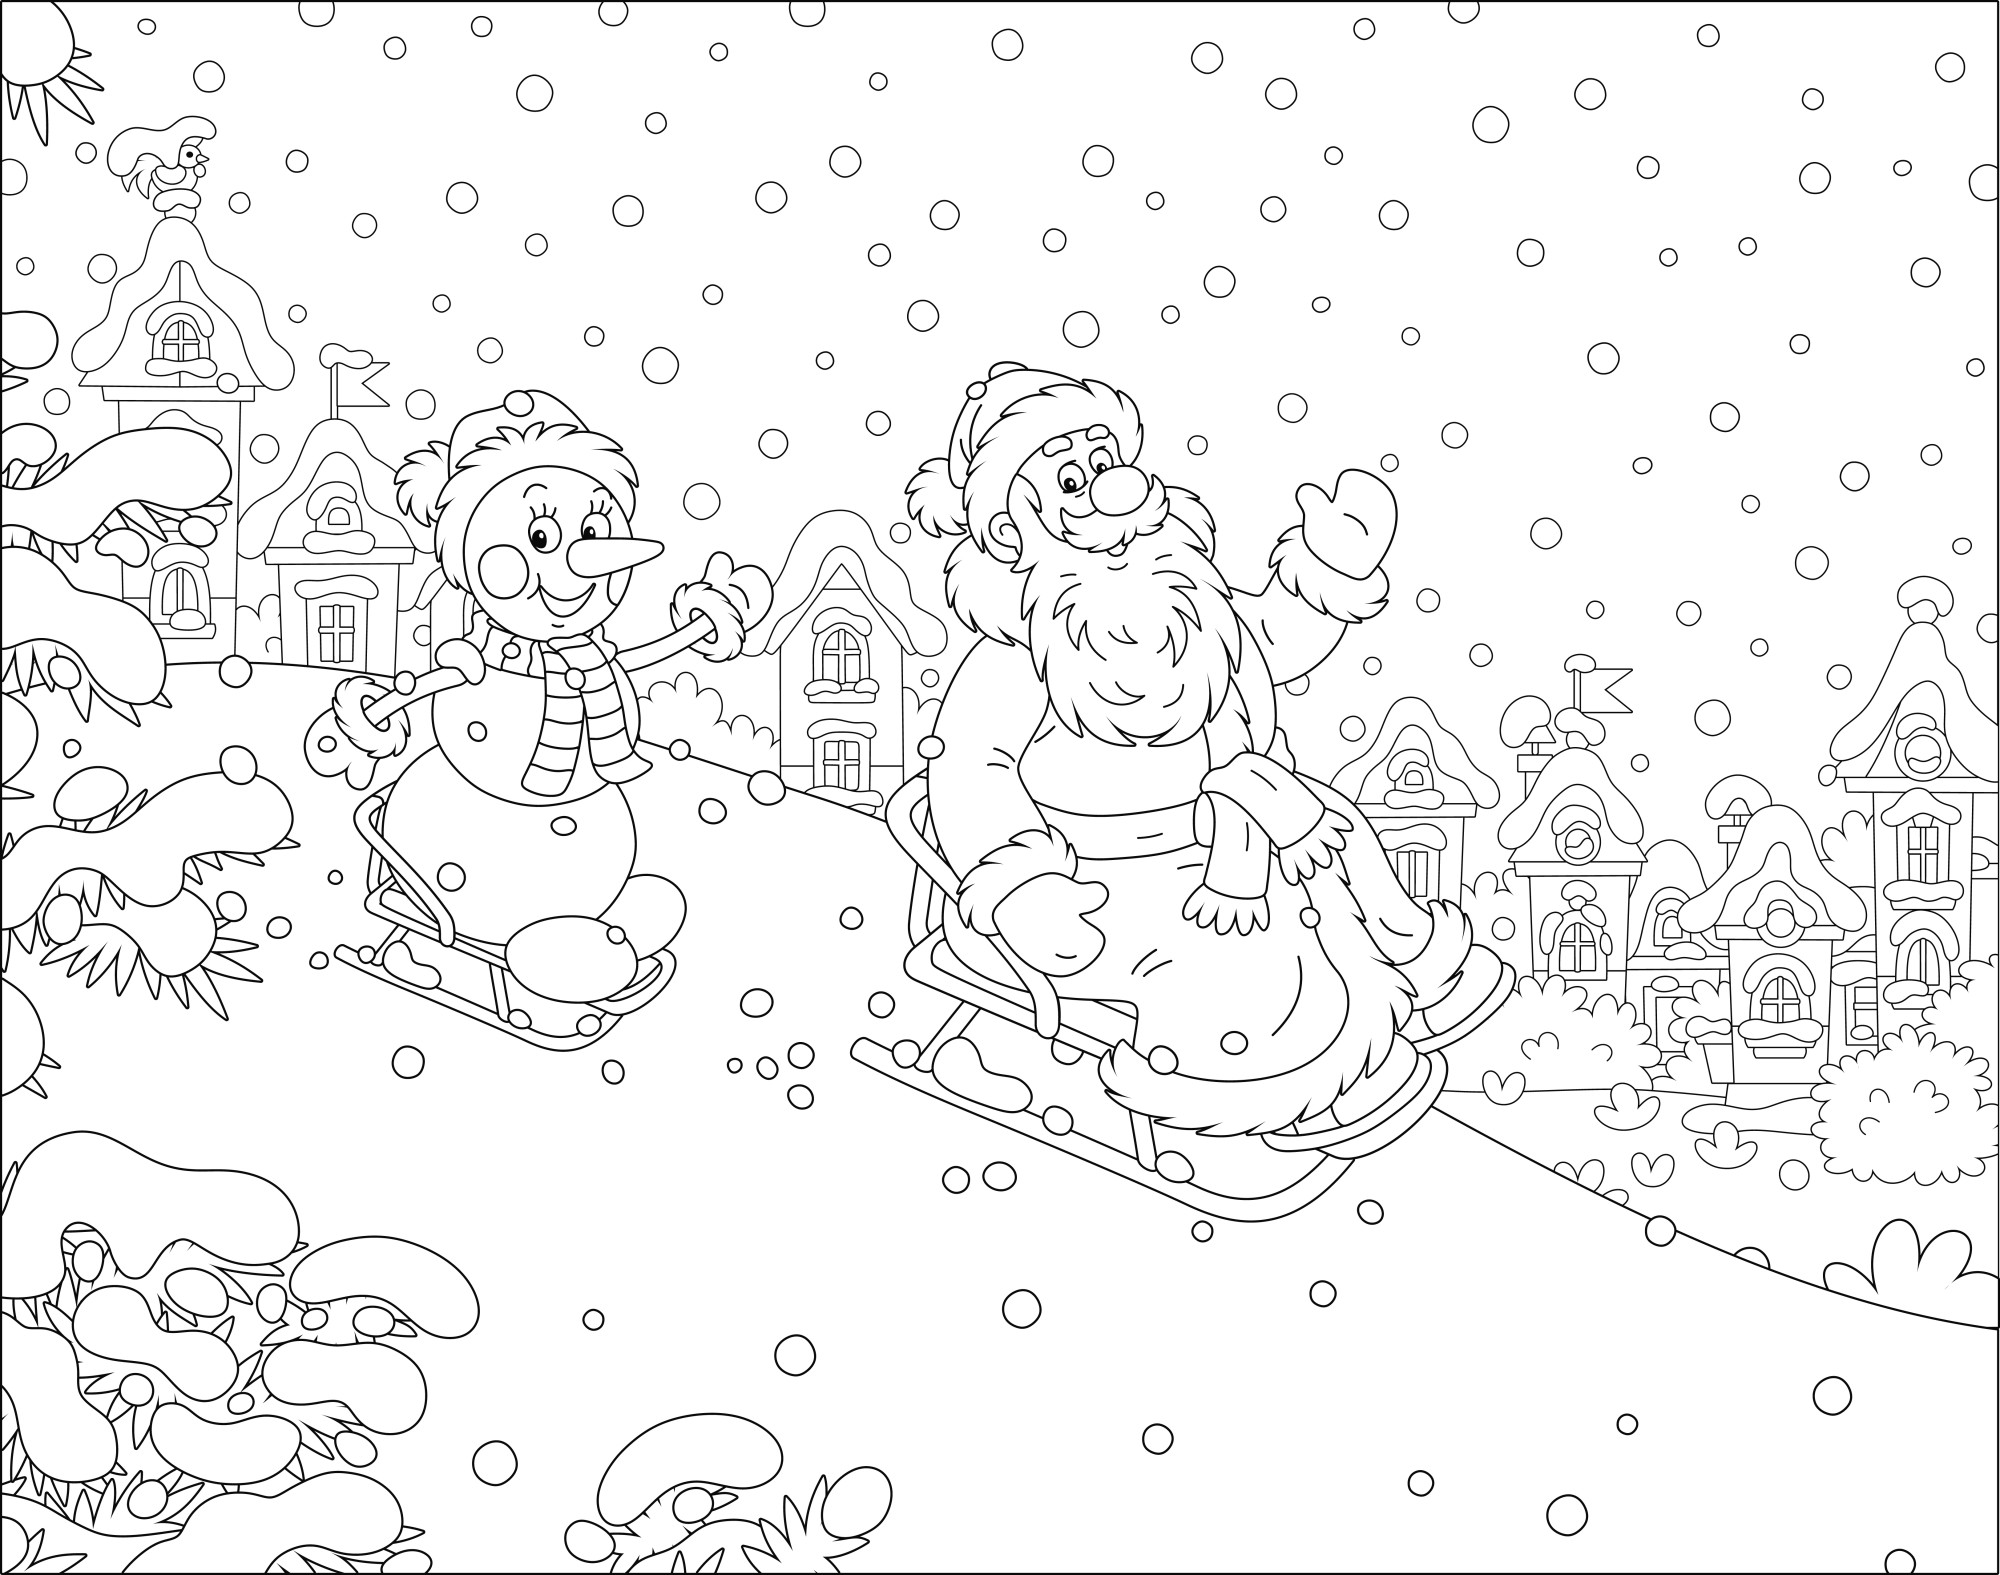 Раскраска для детей: дед мороз и снеговик катаются на санках по снежной горке